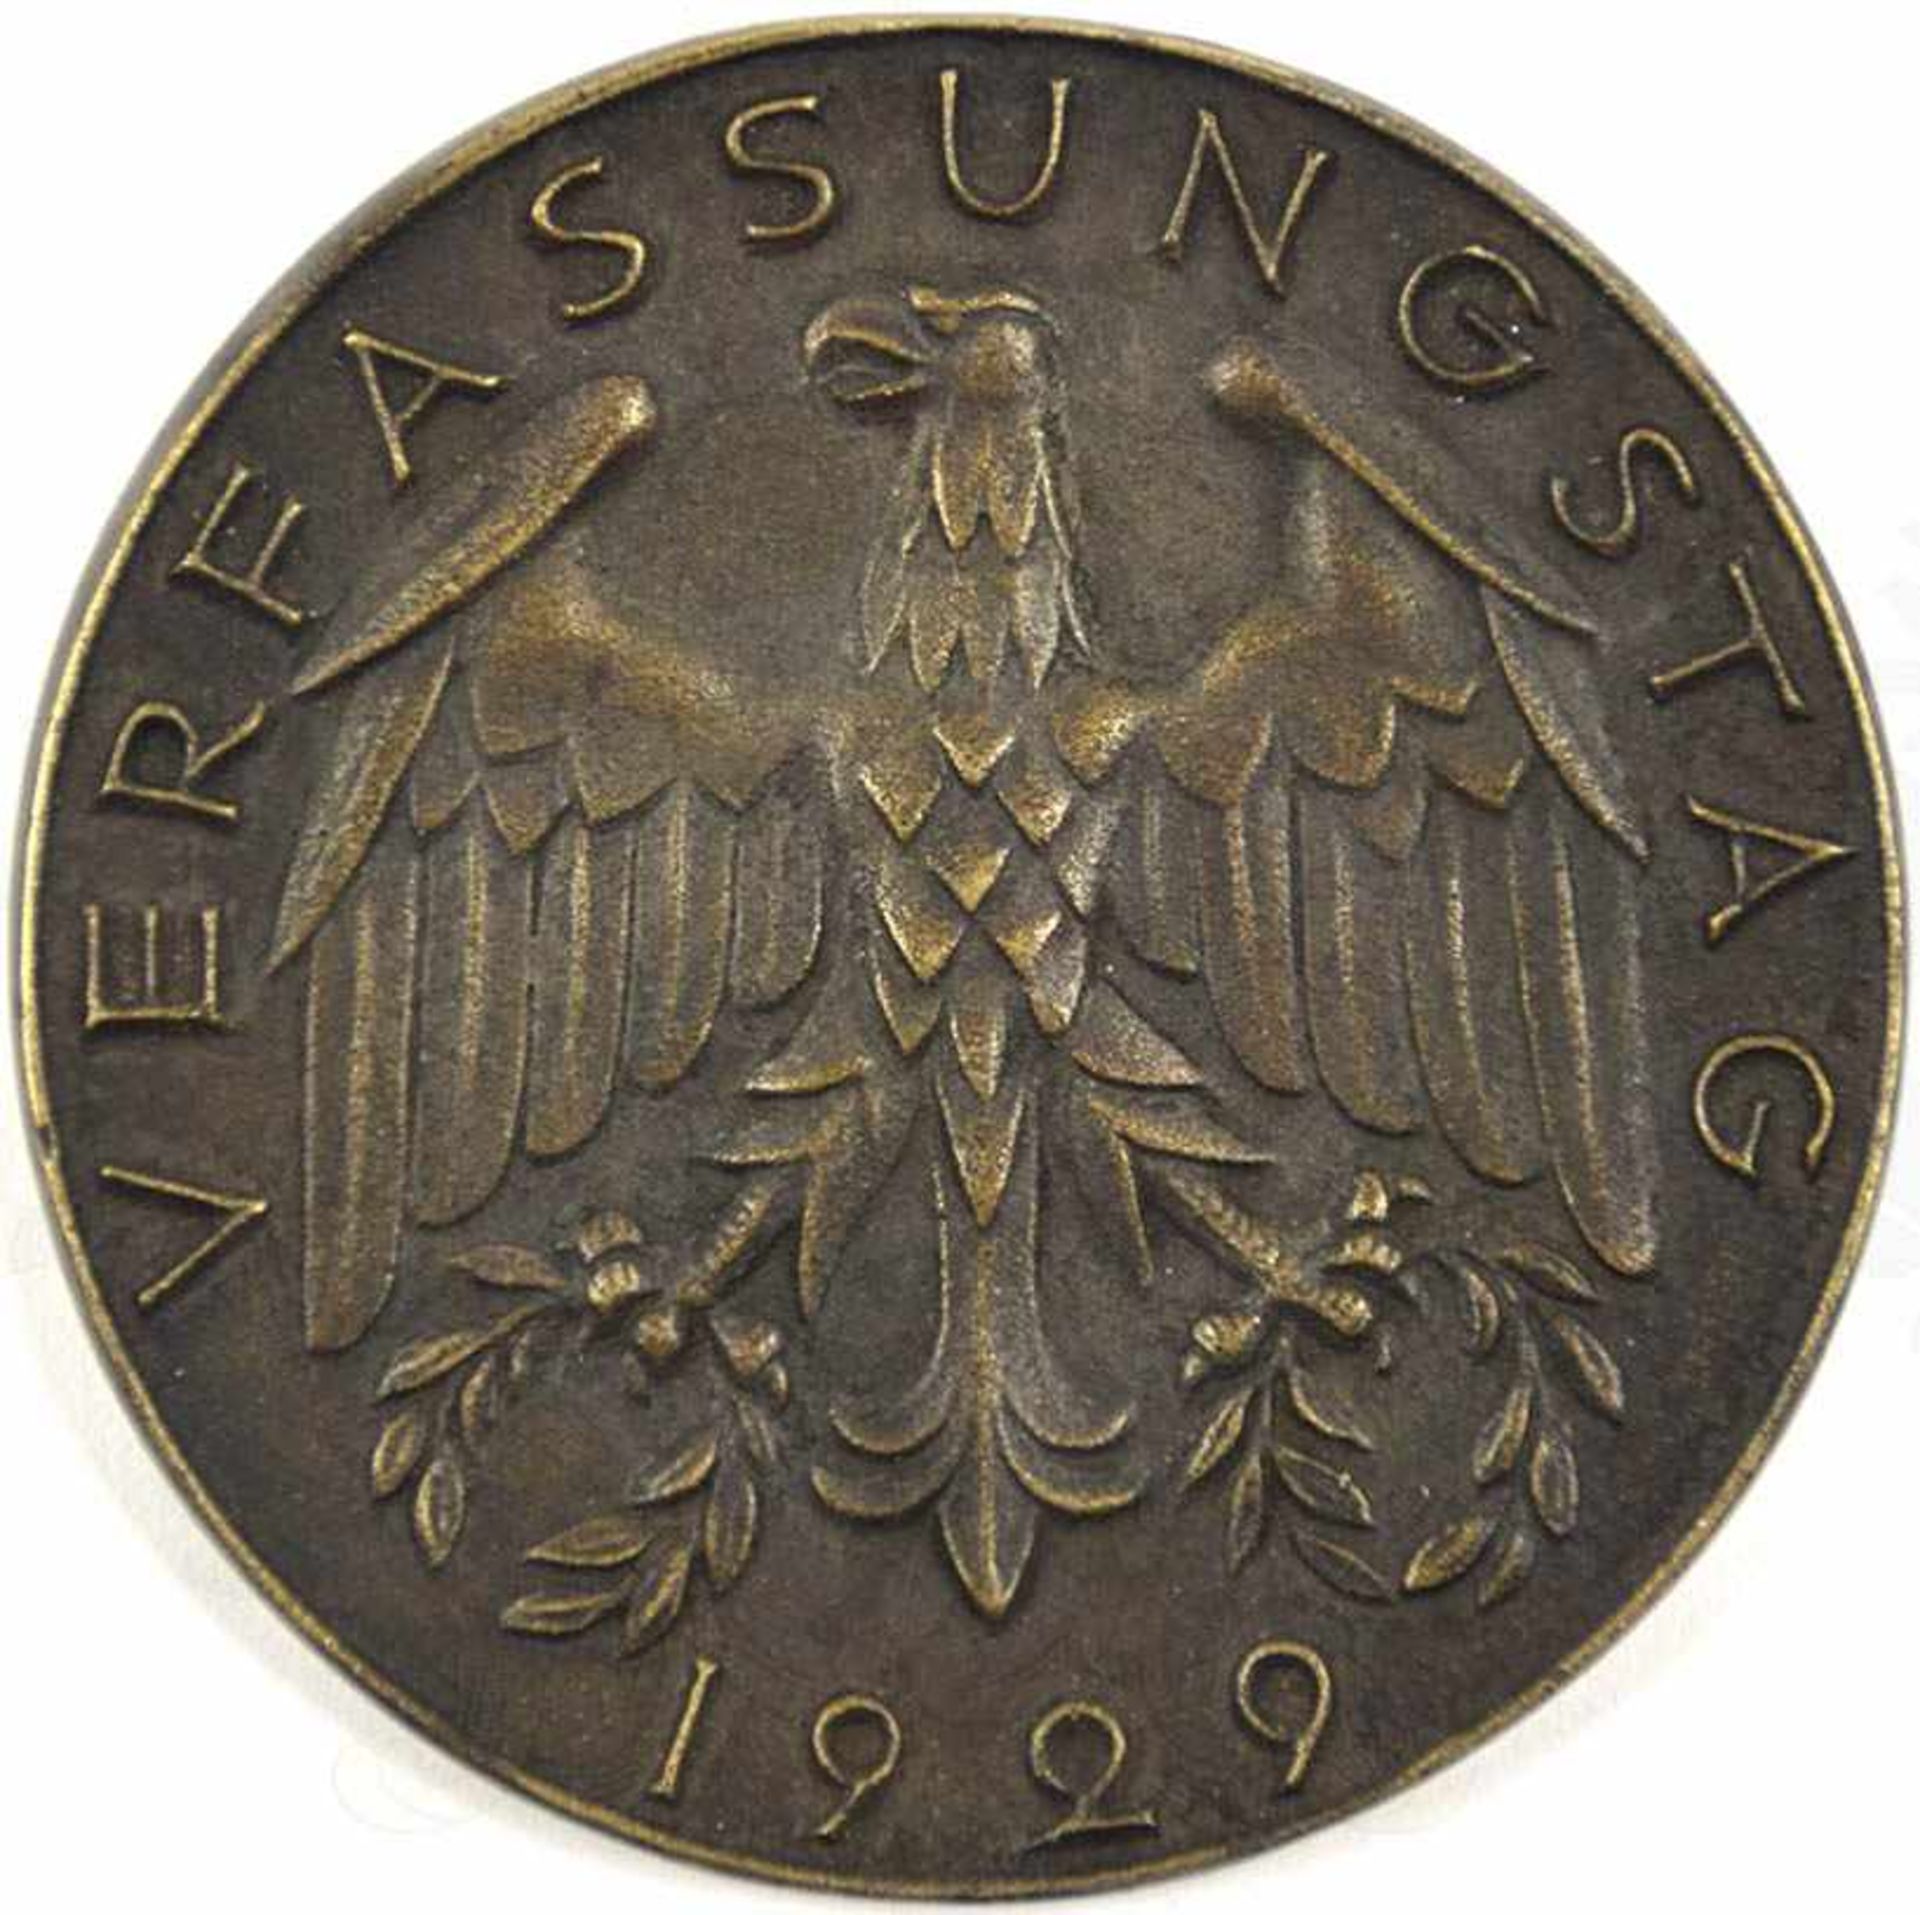 EHRENPLAKETTE DES REICHSPRÄSIDENTEN, Bronze, Umschrift „Verfassungstag 1929“, m. Hoheitsadler u. Arm - Bild 2 aus 2